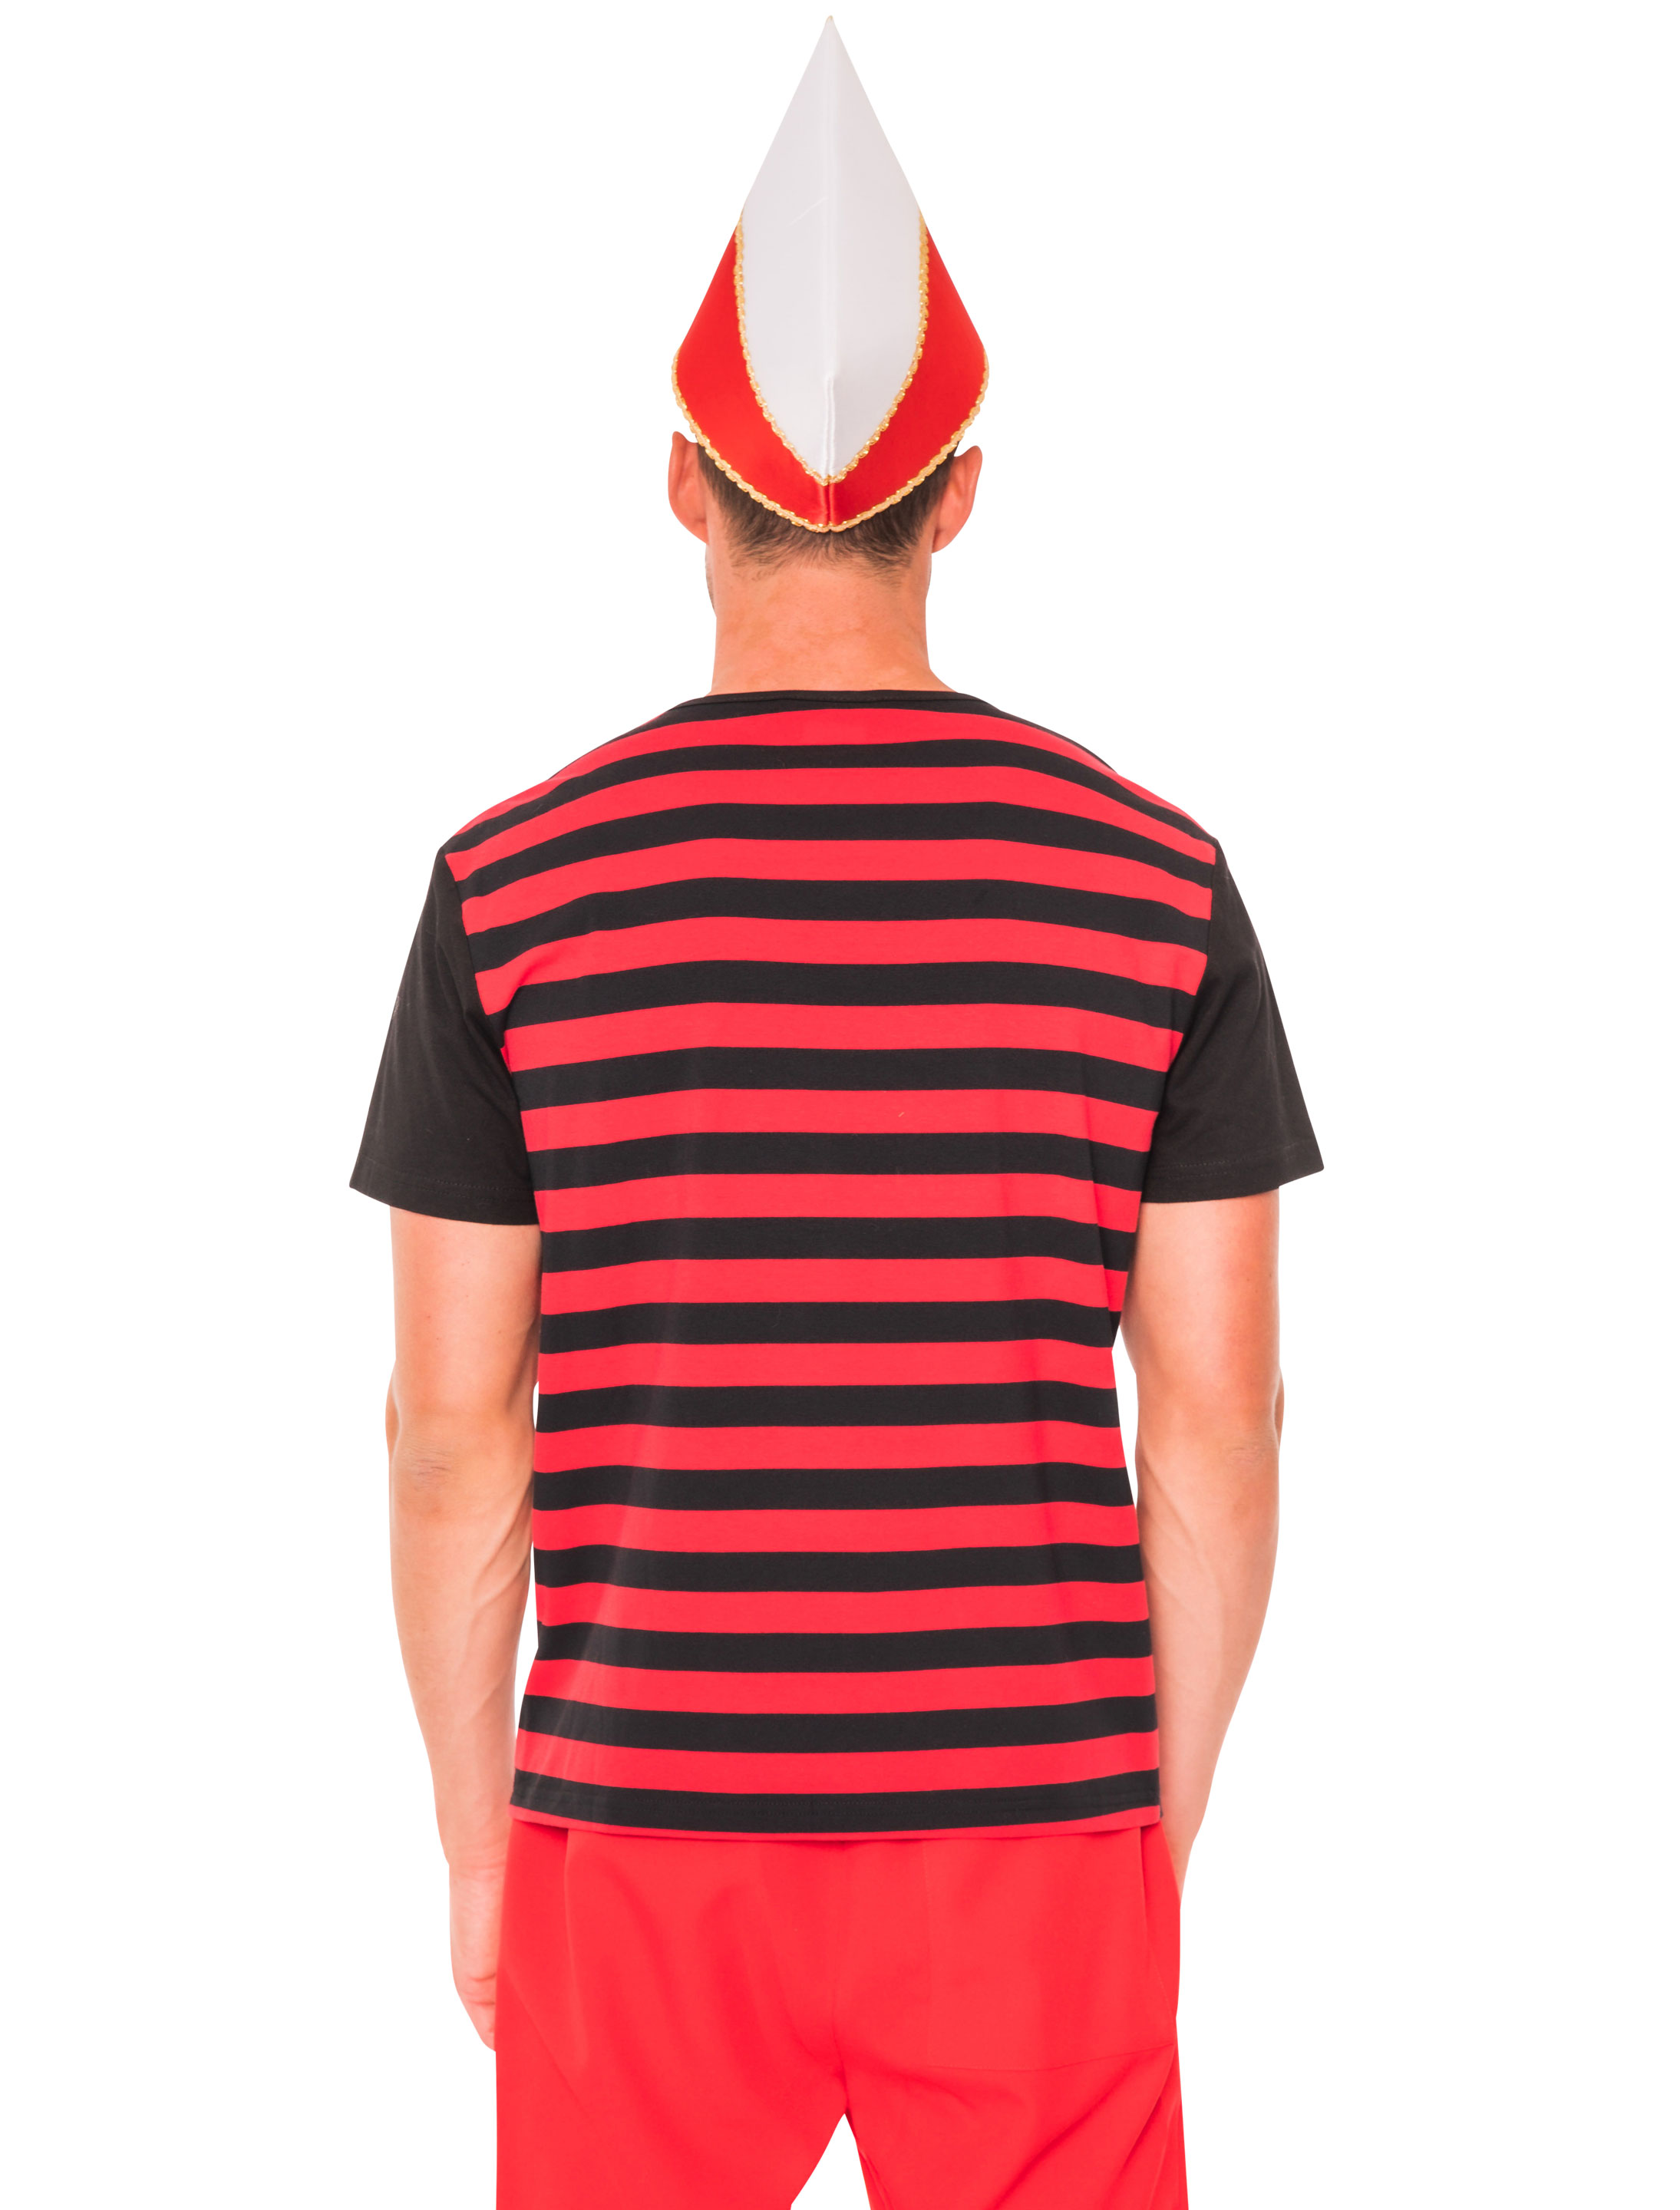 T-Shirt Köln Herren mit Wappen schwarz/rot M